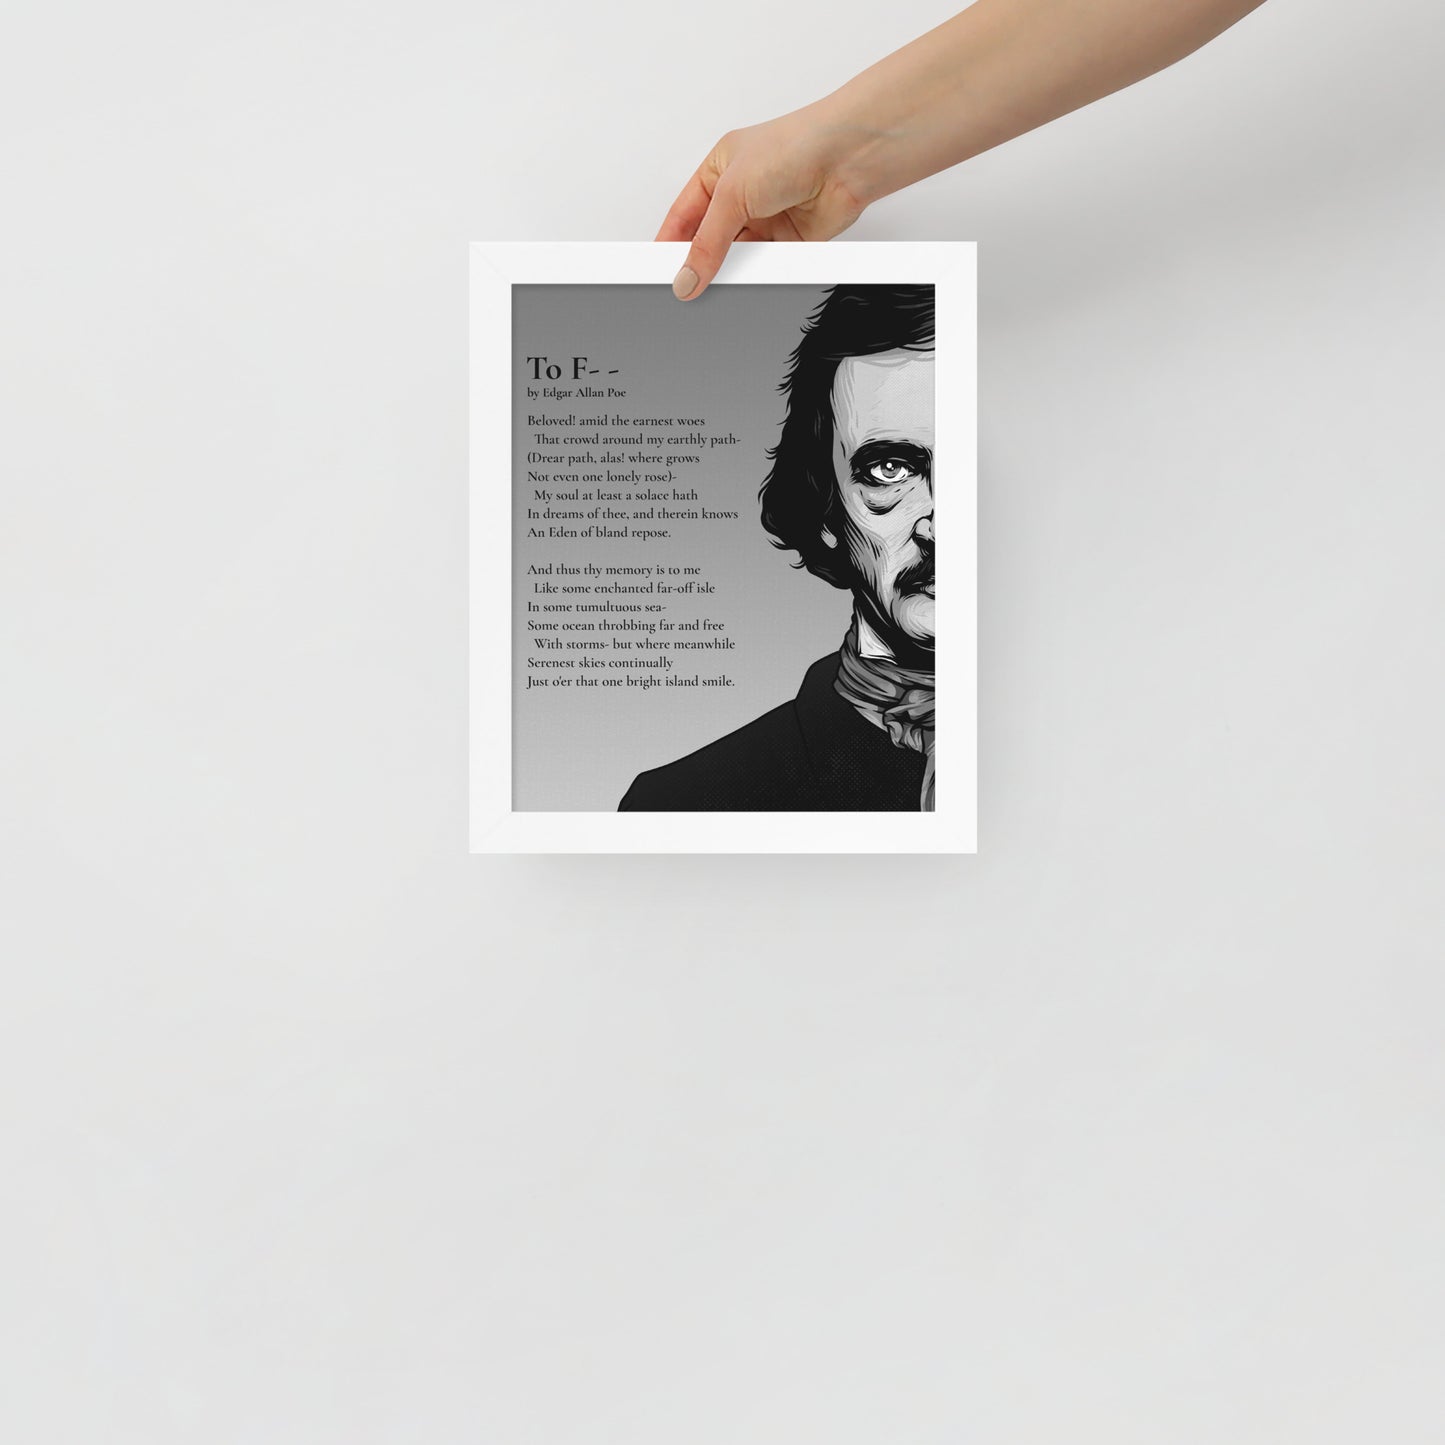 Edgar Allan Poe's 'To F--' Framed Matted Poster - 8 x 10 White Frame